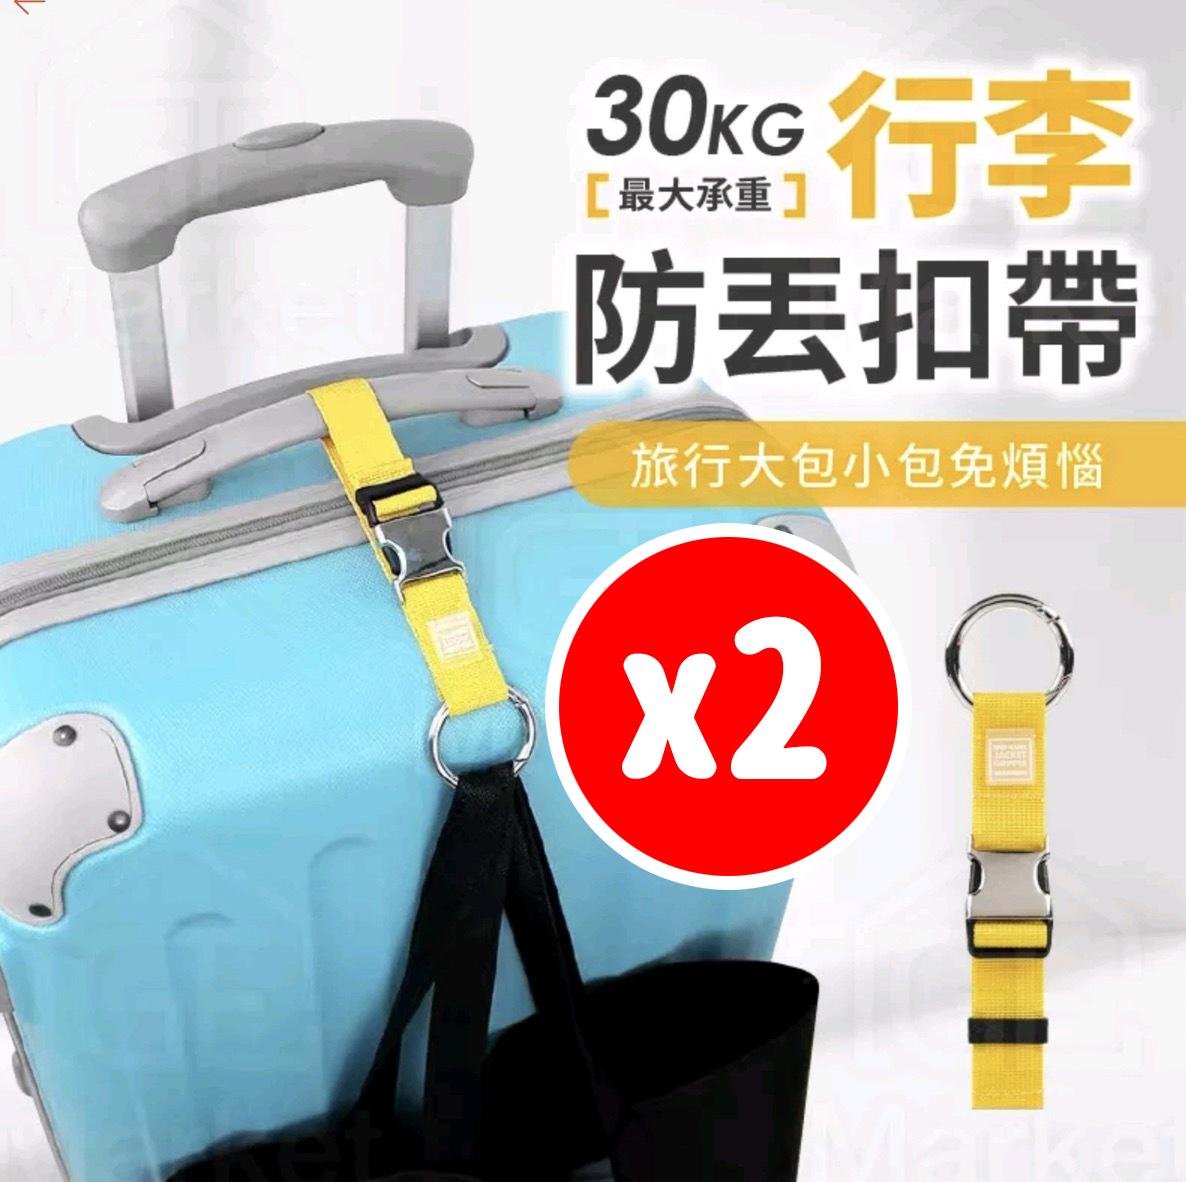 行李掛帶 行李綁帶 行李帶 行李箱綁帶 行李箱束帶 旅行掛繩 行李防丟扣帶  黃色 2個一套 行李帶